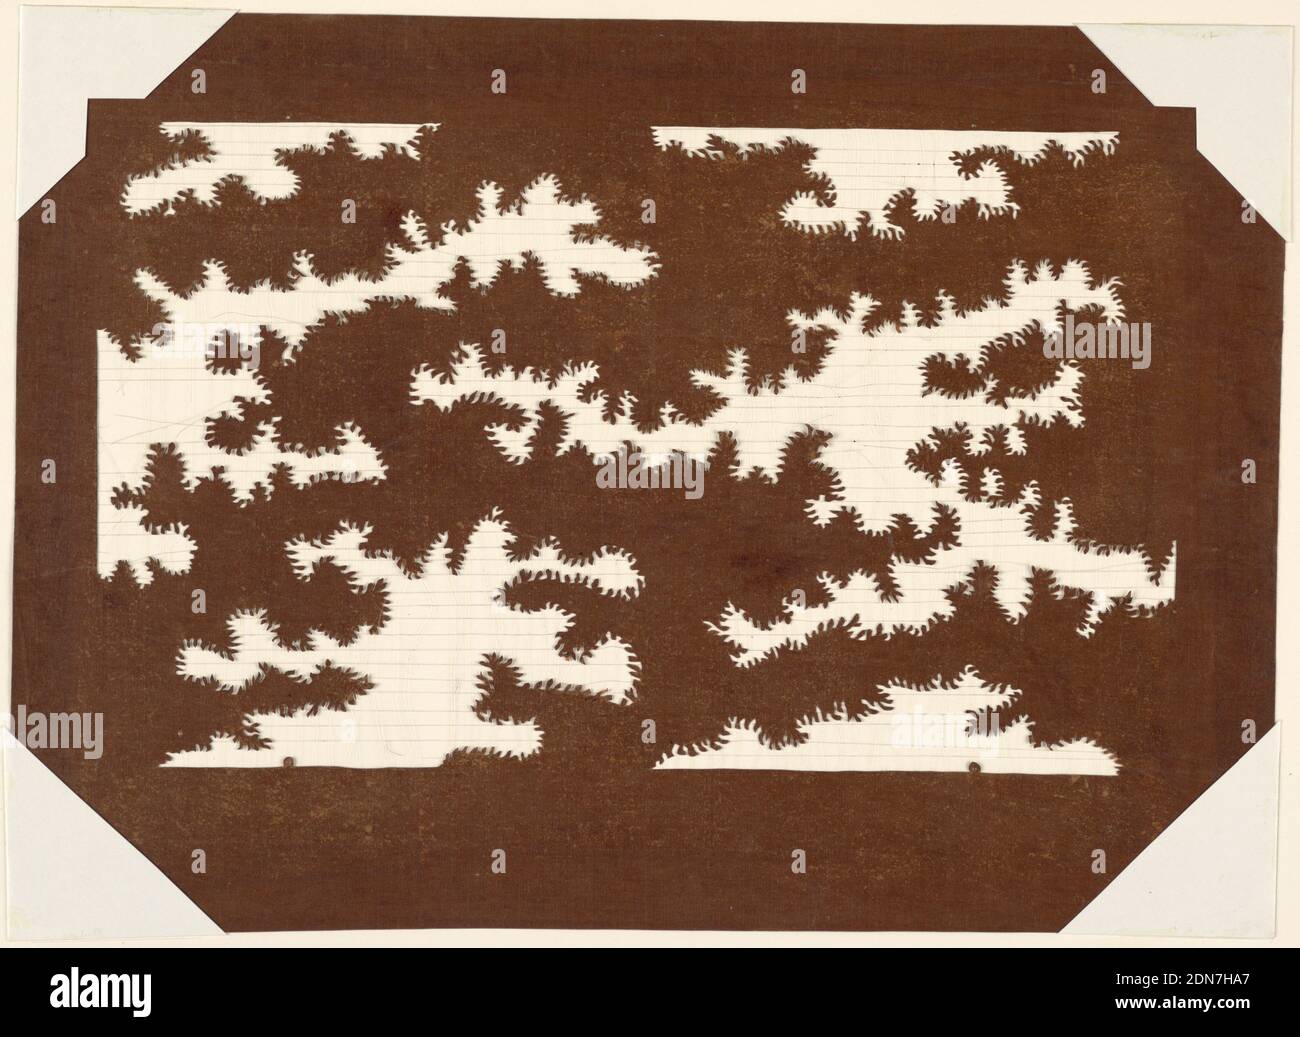 Le cime degli alberi, la carta Mulberry (kozo wabi) trattata con tannino persimmon fermentato (kakishibu), e fili di seta (itoire), Treetops sono scolpiti, suggerendo che il modello funziona in entrambi inversamente pure. I fili di seta sono aggiunti per sostenere la struttura dei fili., Giappone, fine del diciottesimo - inizio del diciannovesimo secolo, disegni tessili, Katagami, Katagami Foto Stock